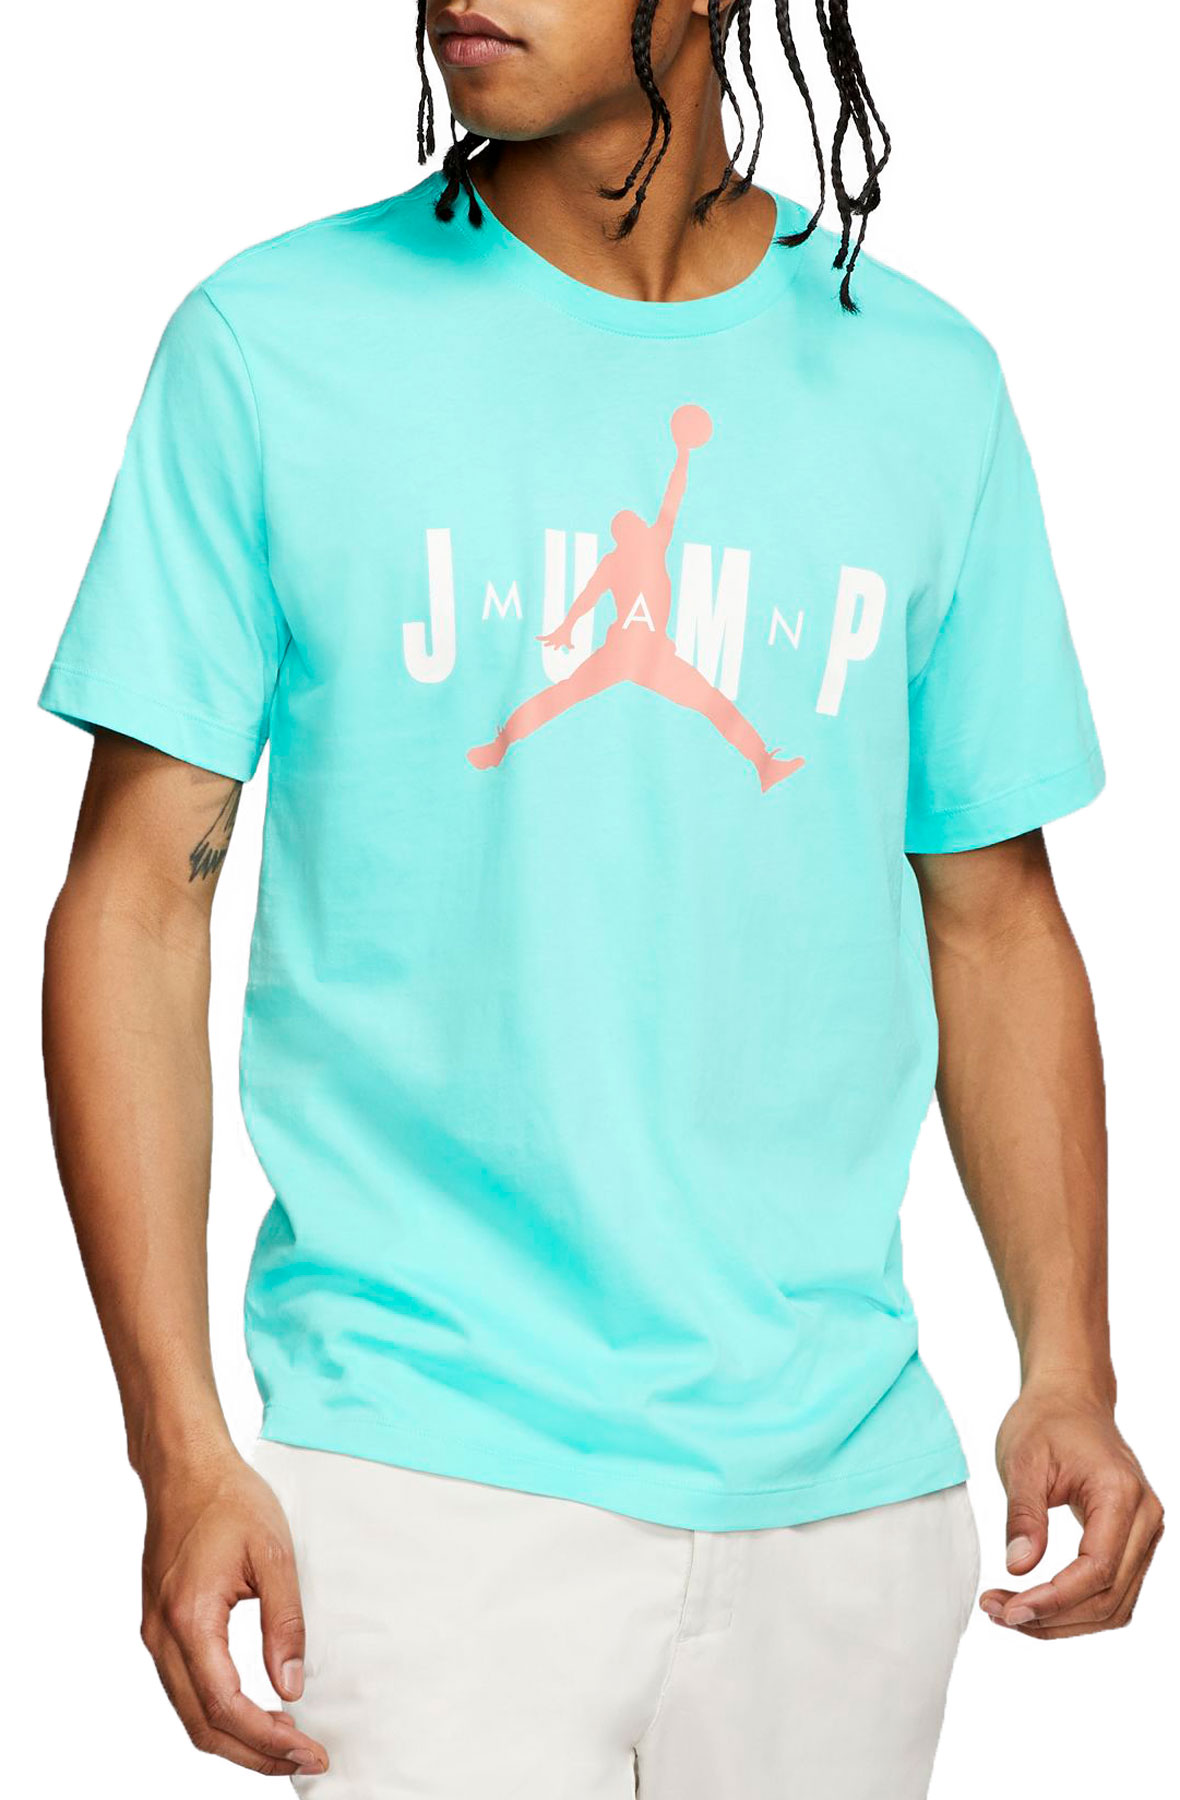 pink and blue jordan shirt